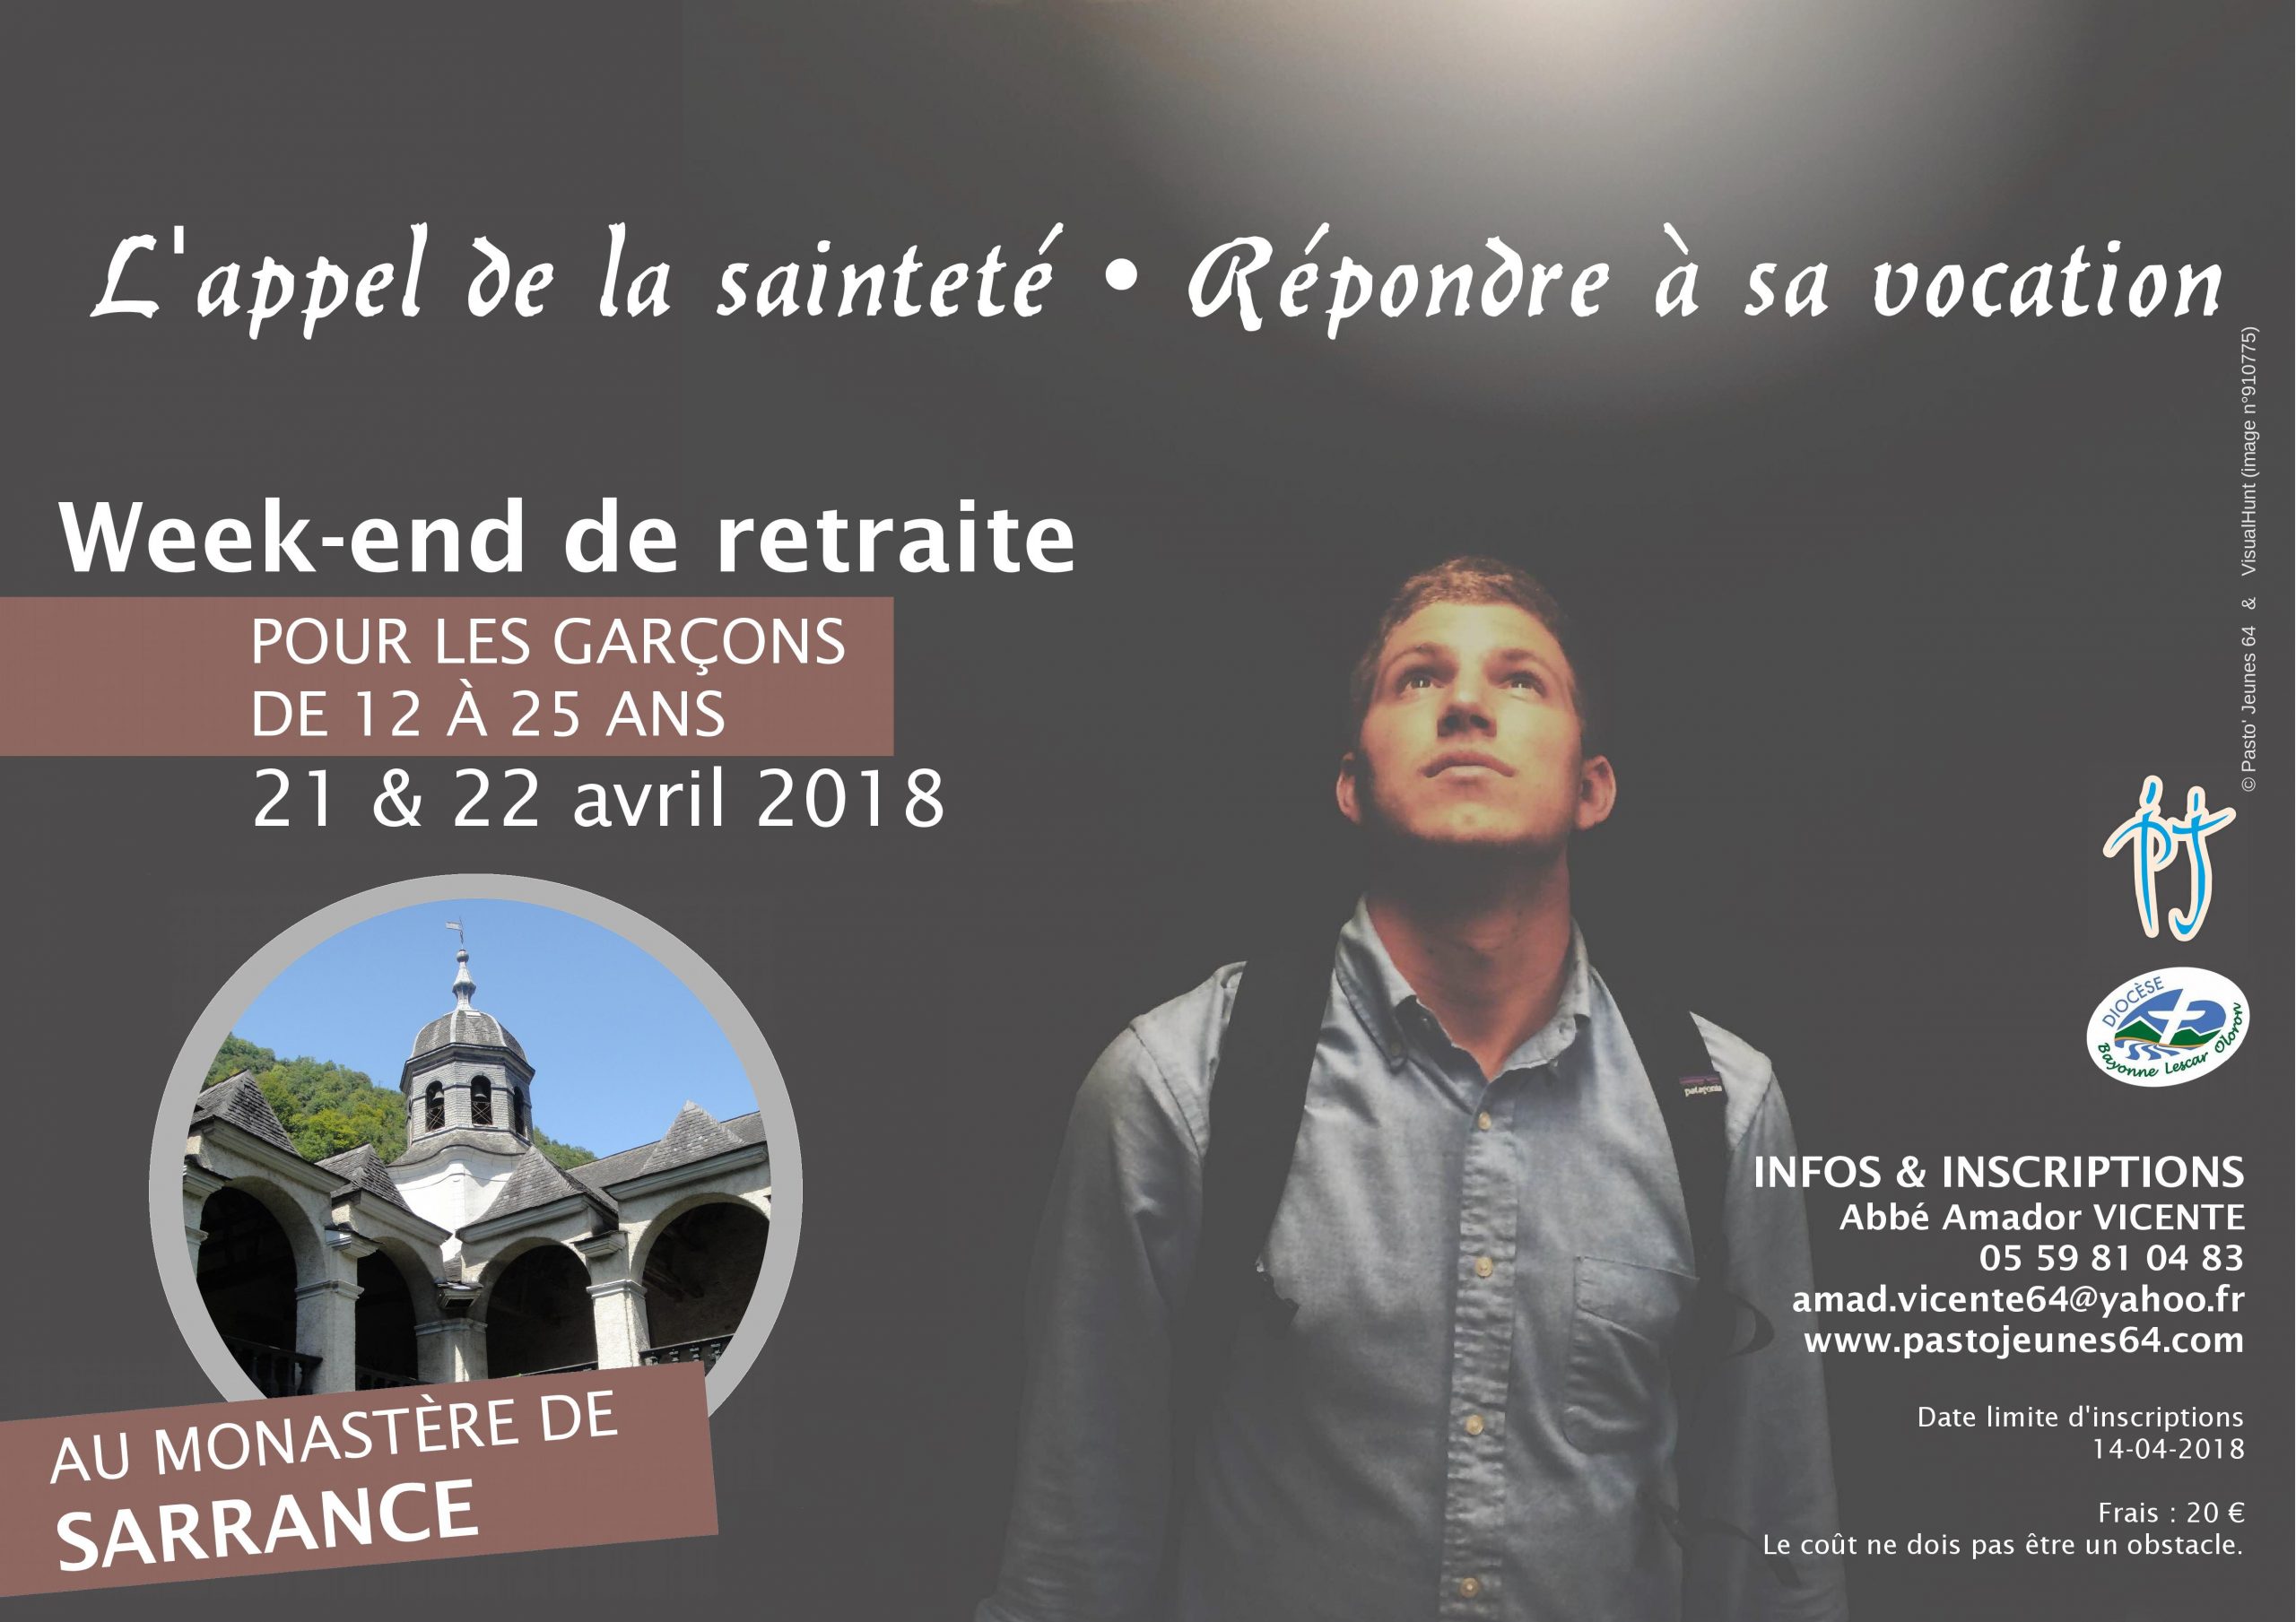 Week-end de retraite pour garçons les 21 et 22 avril 2018 à Sarrance (64)